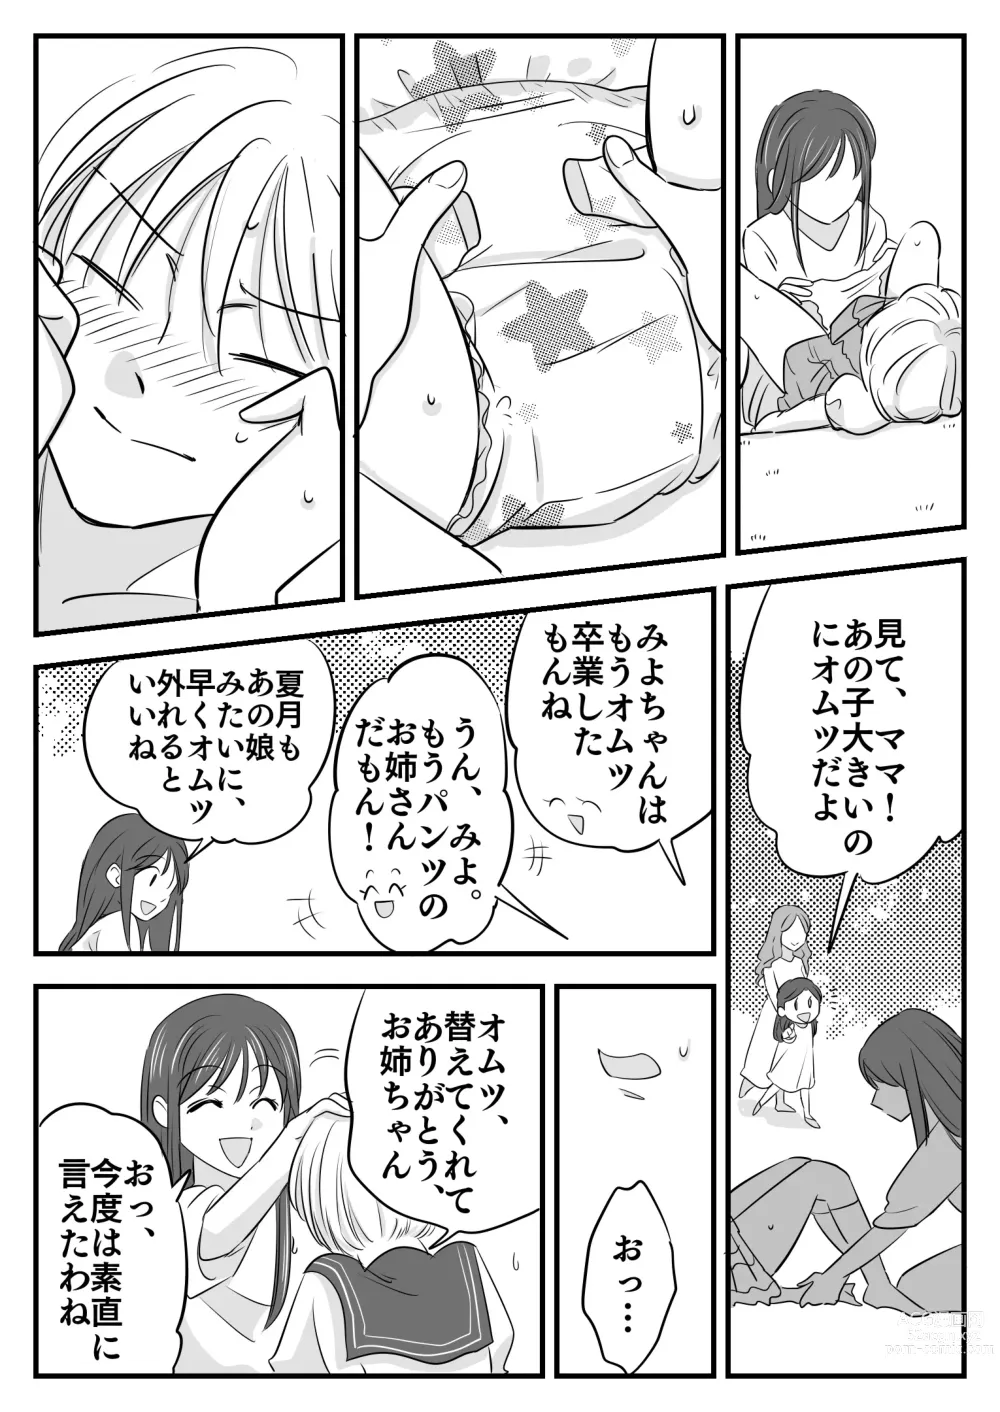 Page 19 of doujinshi Boku no Omutsu Kazoku Ryokou